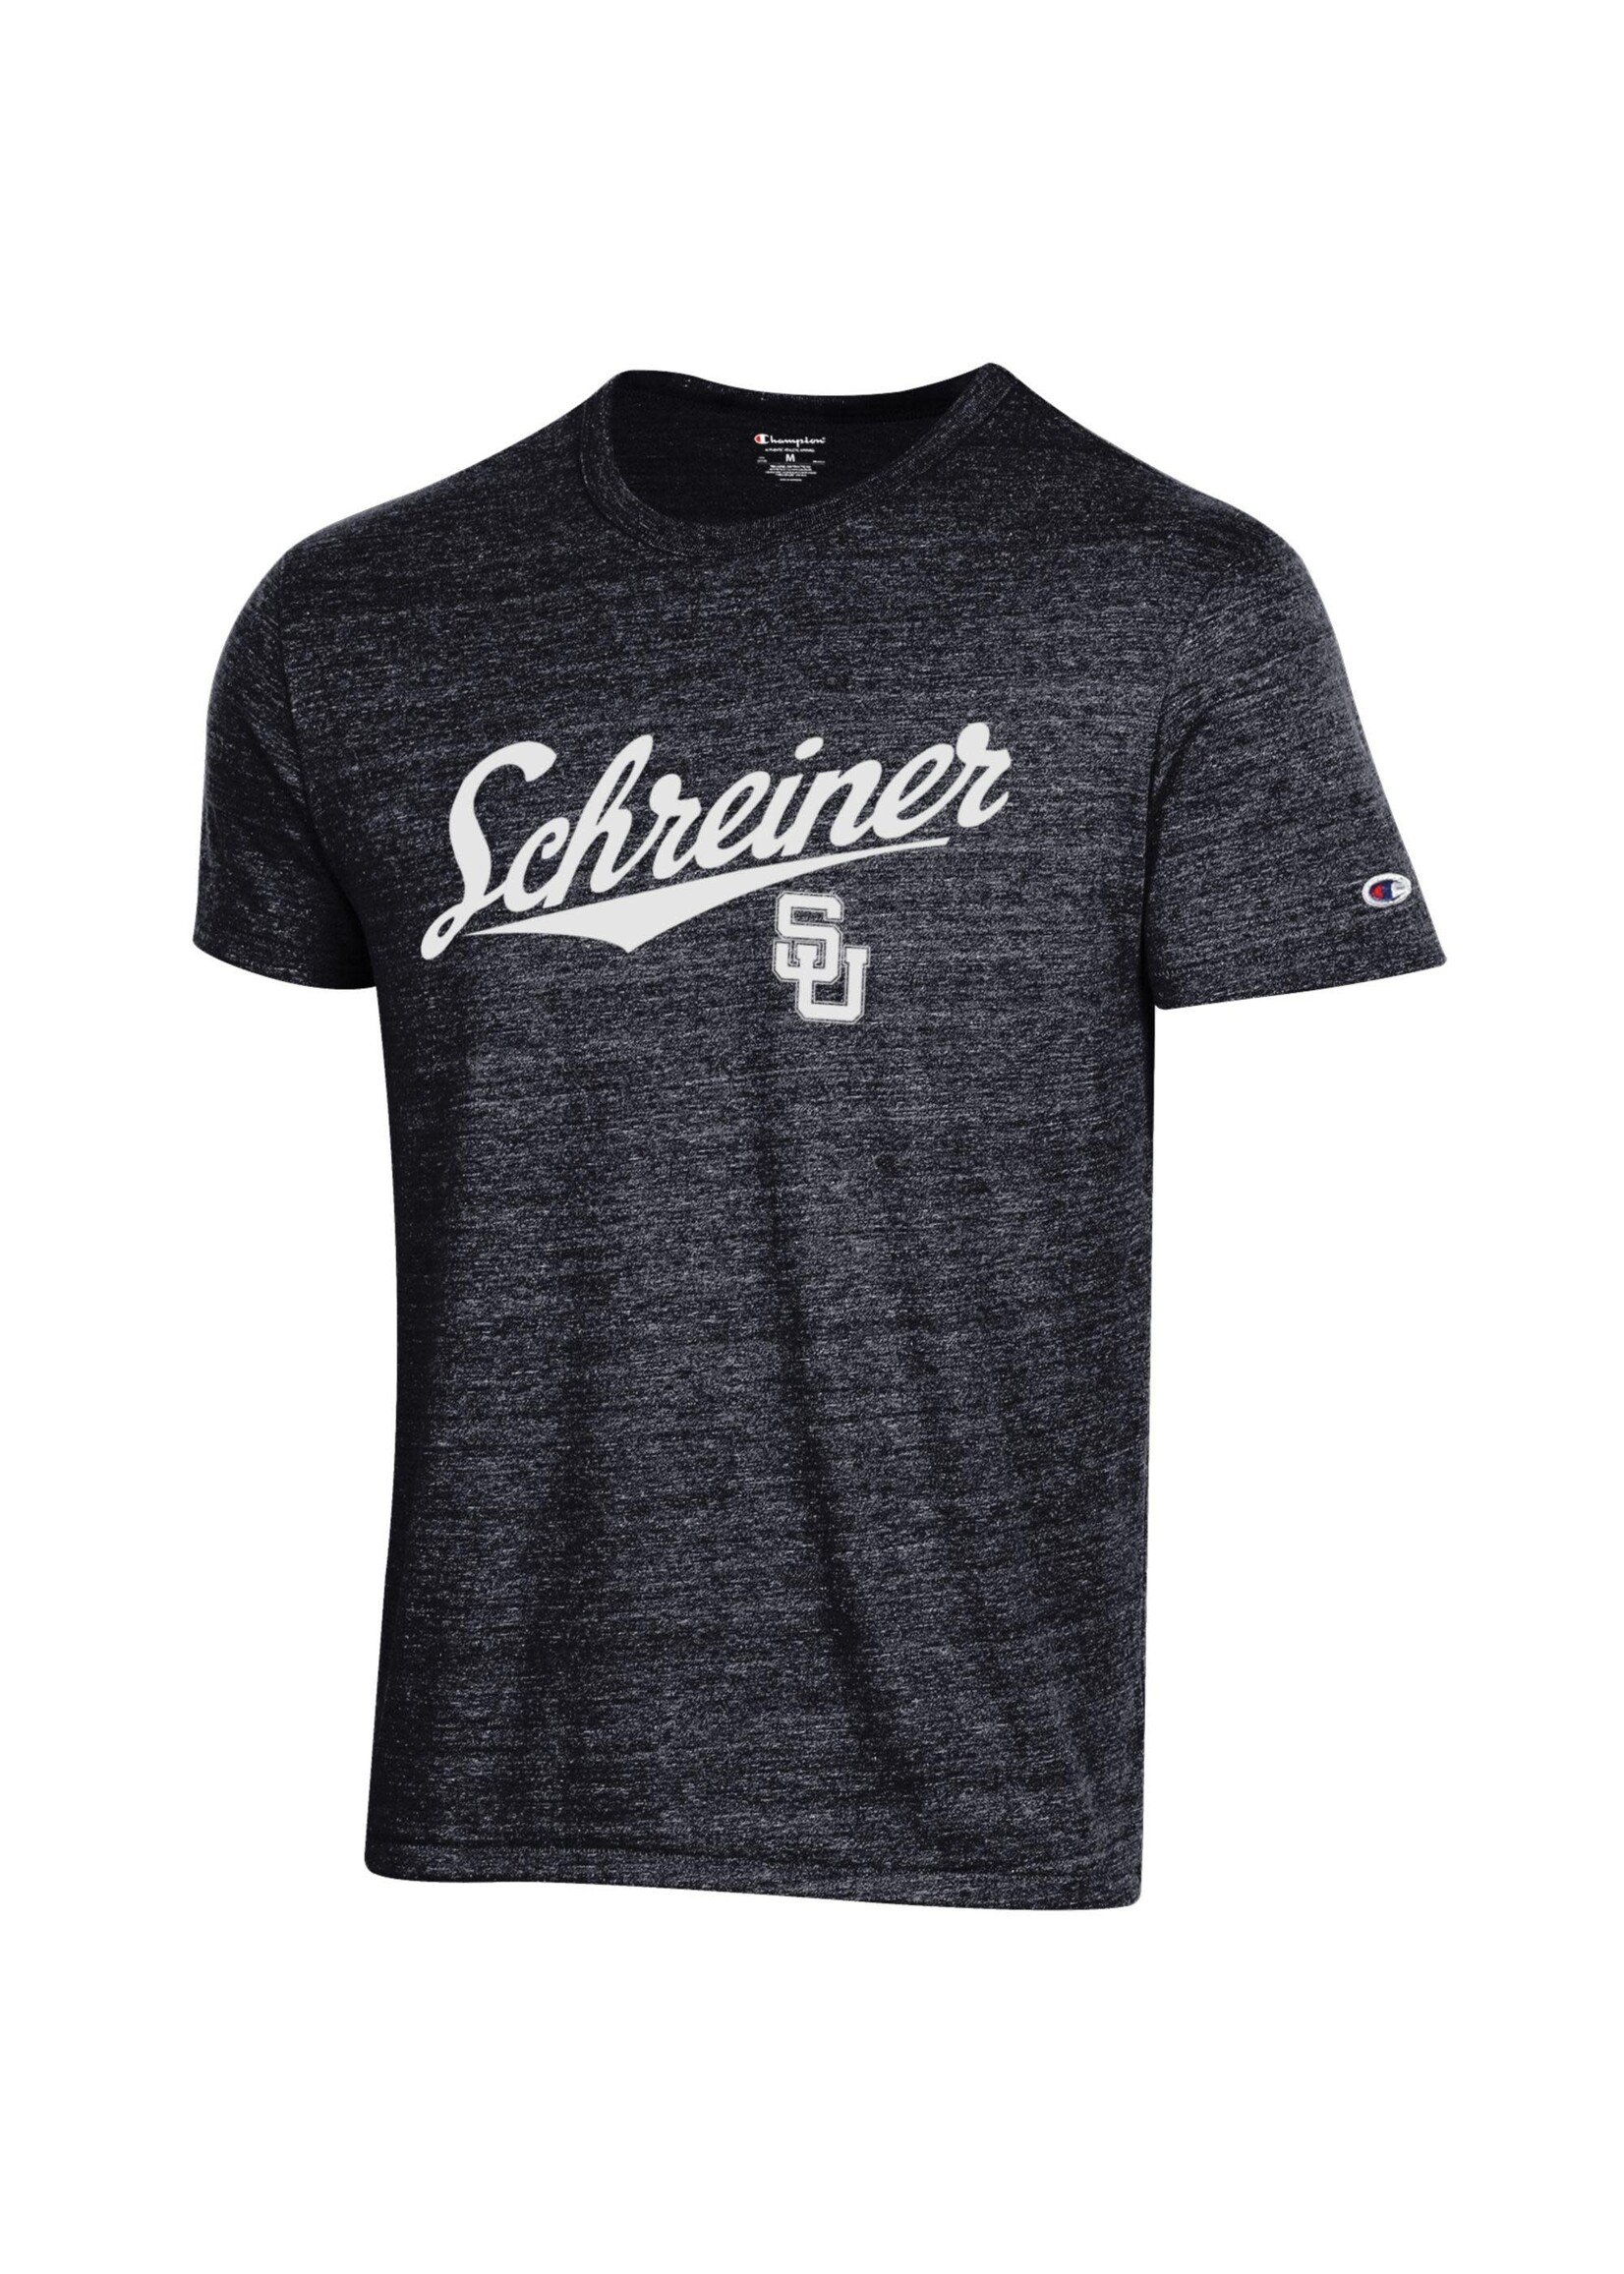 Champion Champion Schreiner Tri-Blend T-shirt